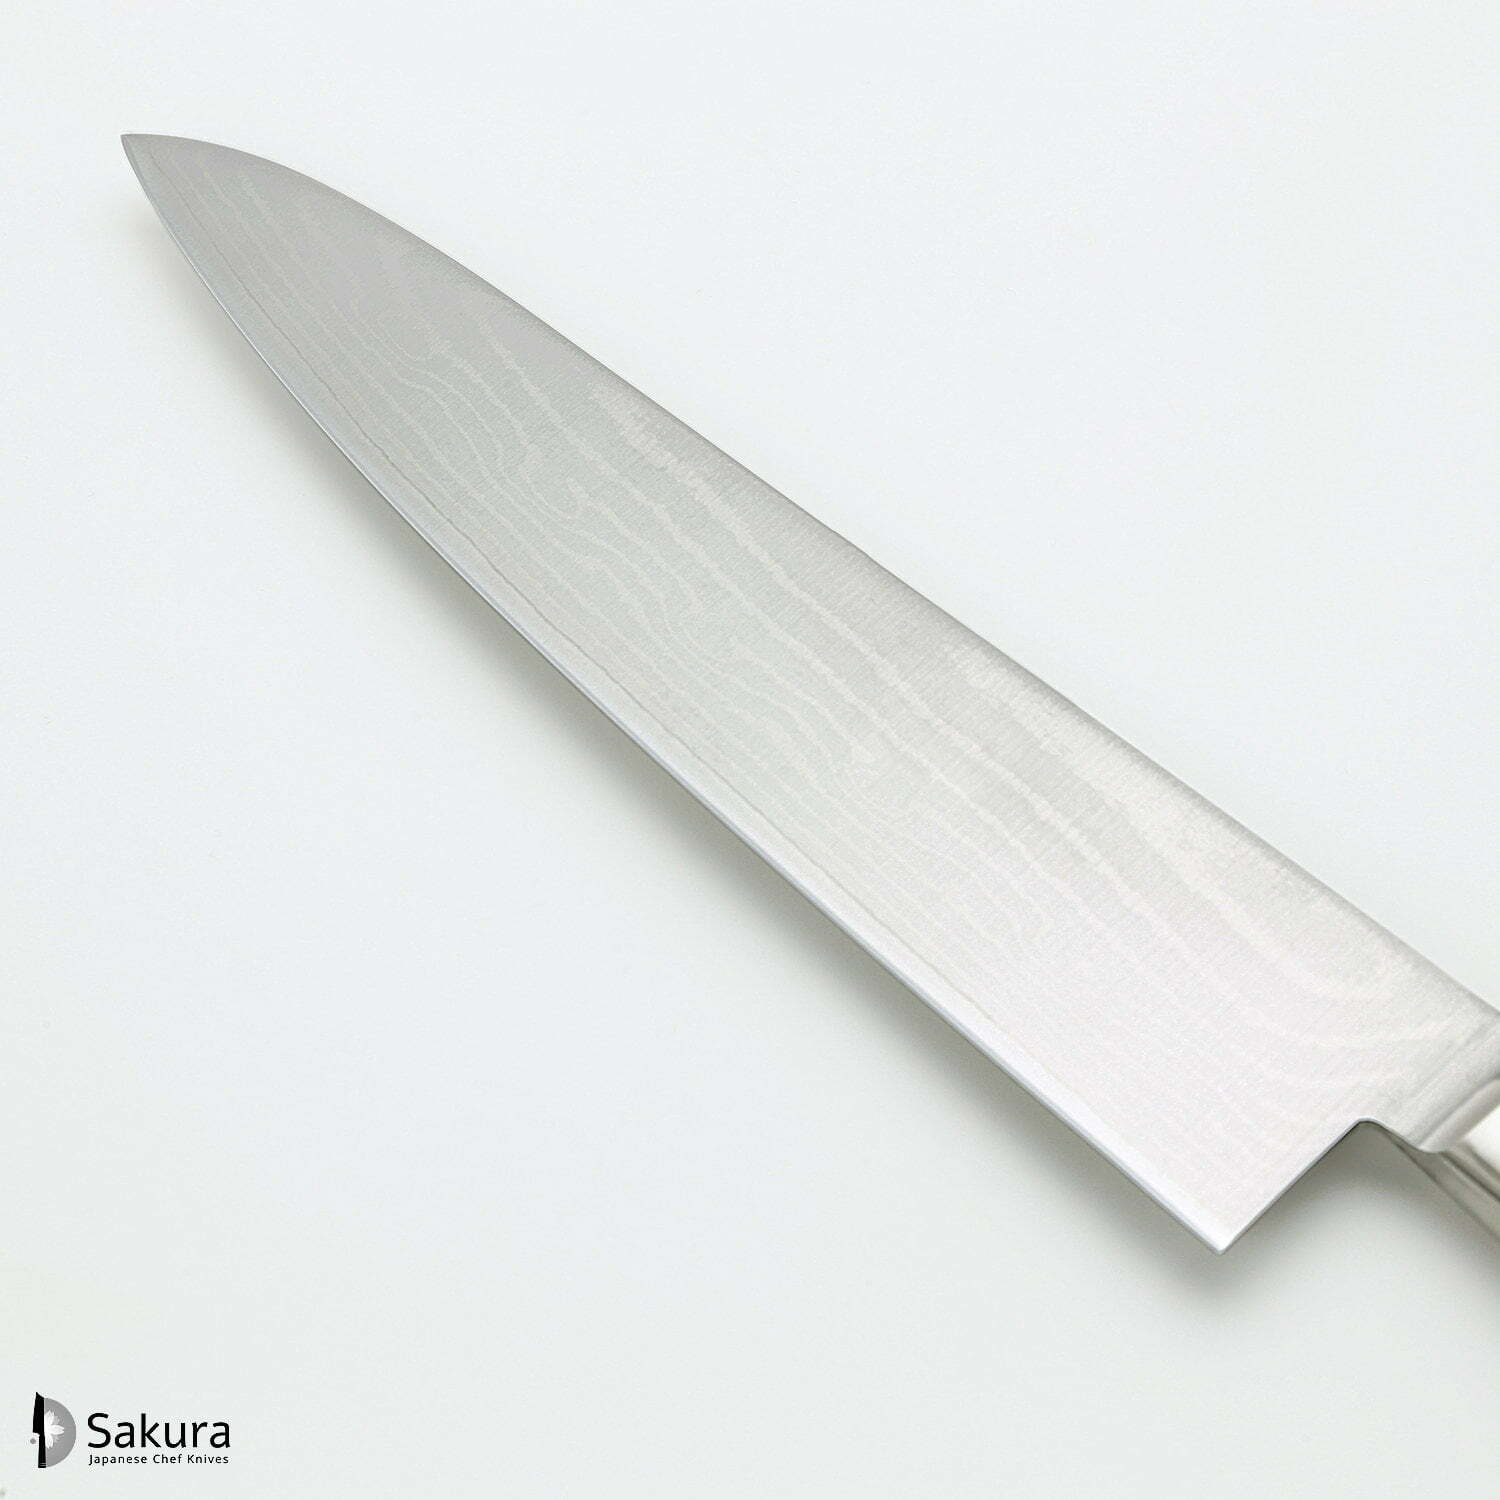 סכין שף רב-תכליתית גִּיוּטוֹ 210מ״מ מחוזקת 37 שכבות: פלדת פחמן יפנית VG-10 עטופה 36 שכבות פלדת אל-חלד גימור דמשק 37 שכבות טוג׳ירו יפן